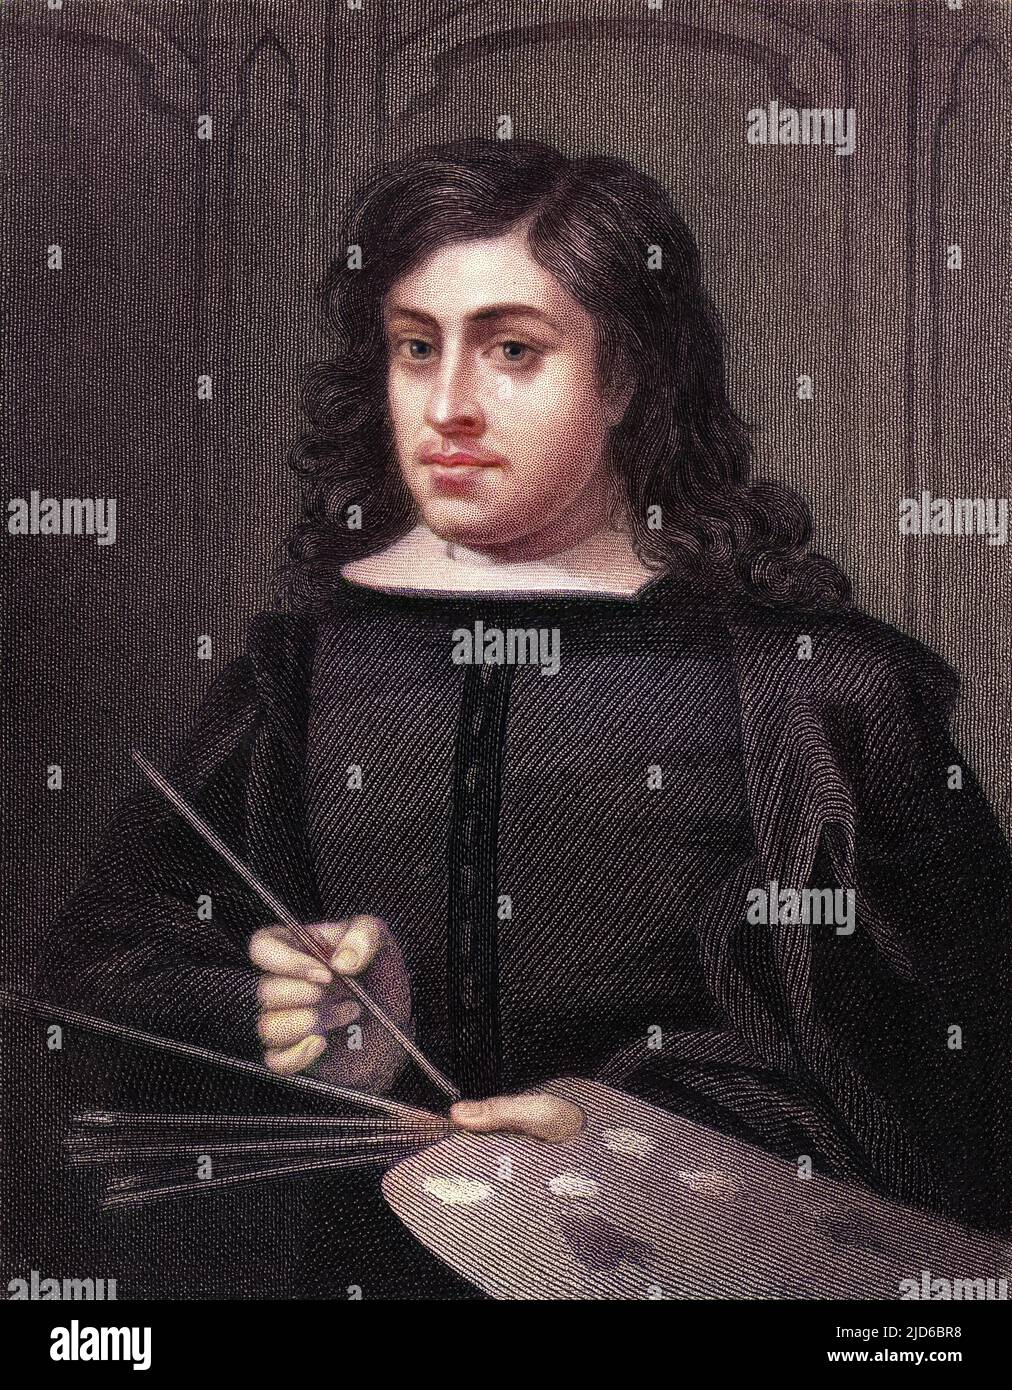 BARTOLOME ESTEBAN MURILLO artiste espagnol tenant le pinceau et la palette. Version colorisée de : 10166878 Date: 1617 - 1688 Banque D'Images